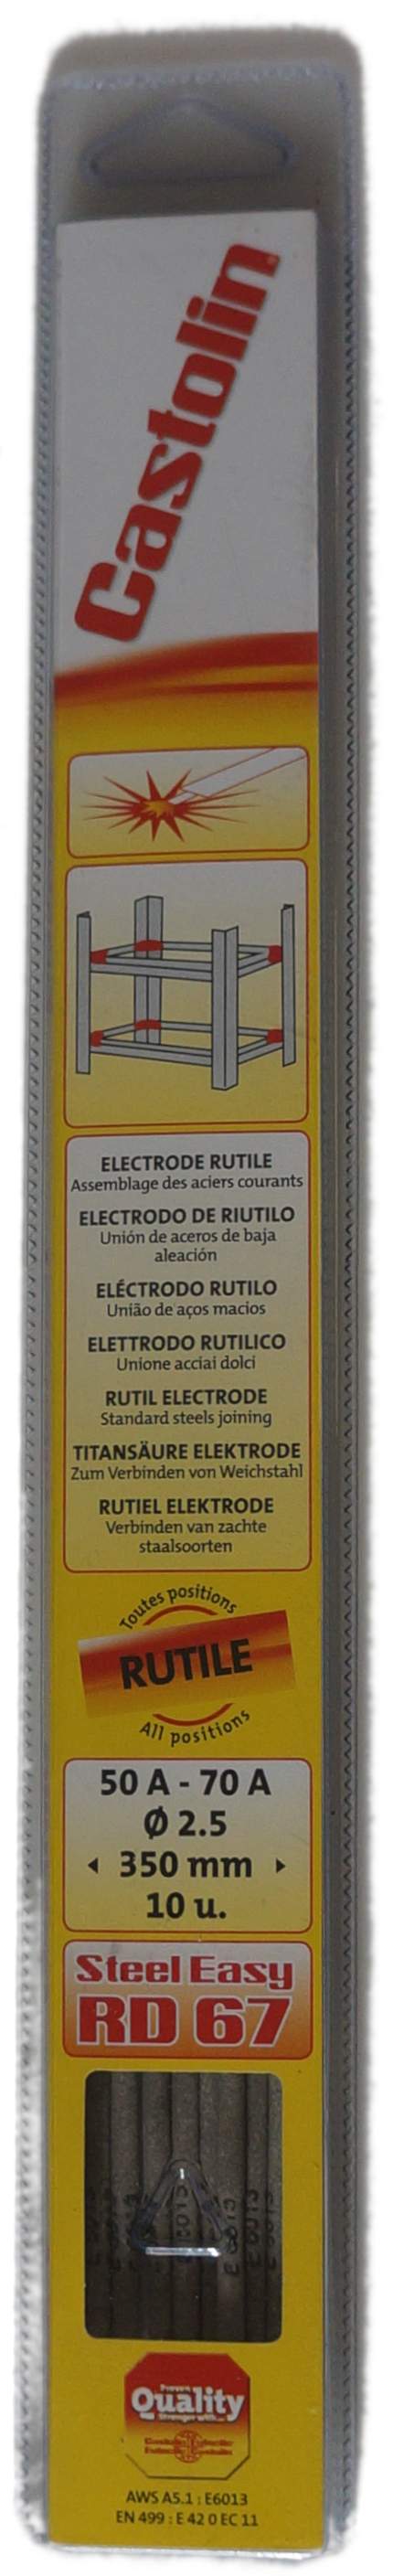 Elektrode für Lichtbogenschweißen 2,5 mm, 10 Stück